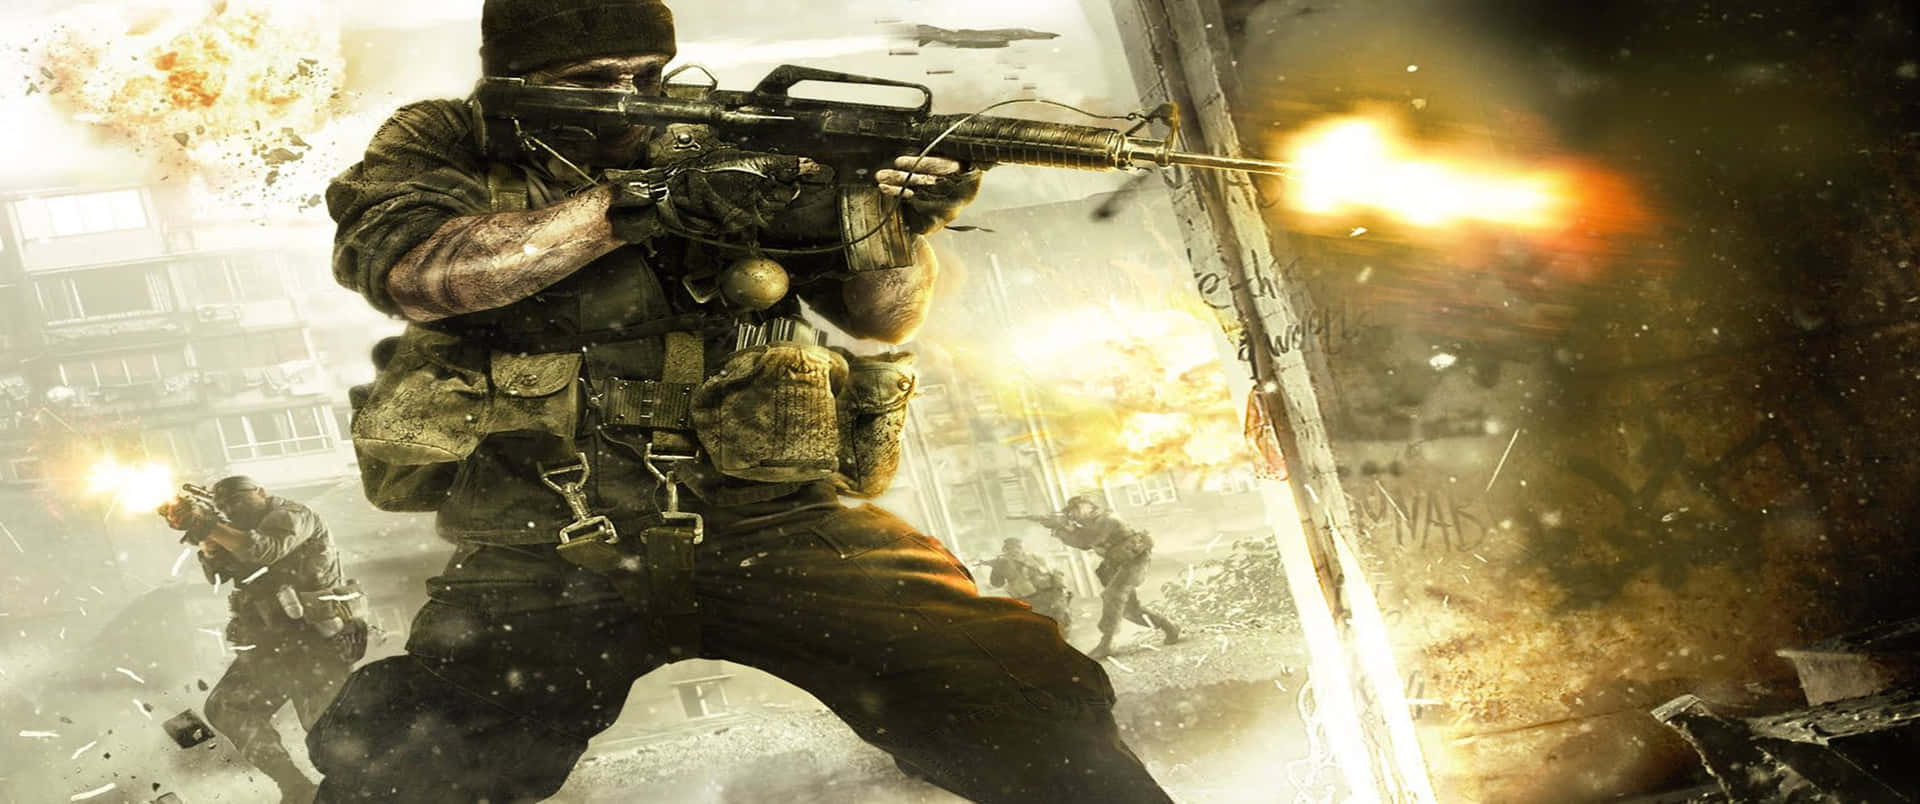 Fondodesgastado De Call Of Duty Black Ops Cold War En 3440x1440p